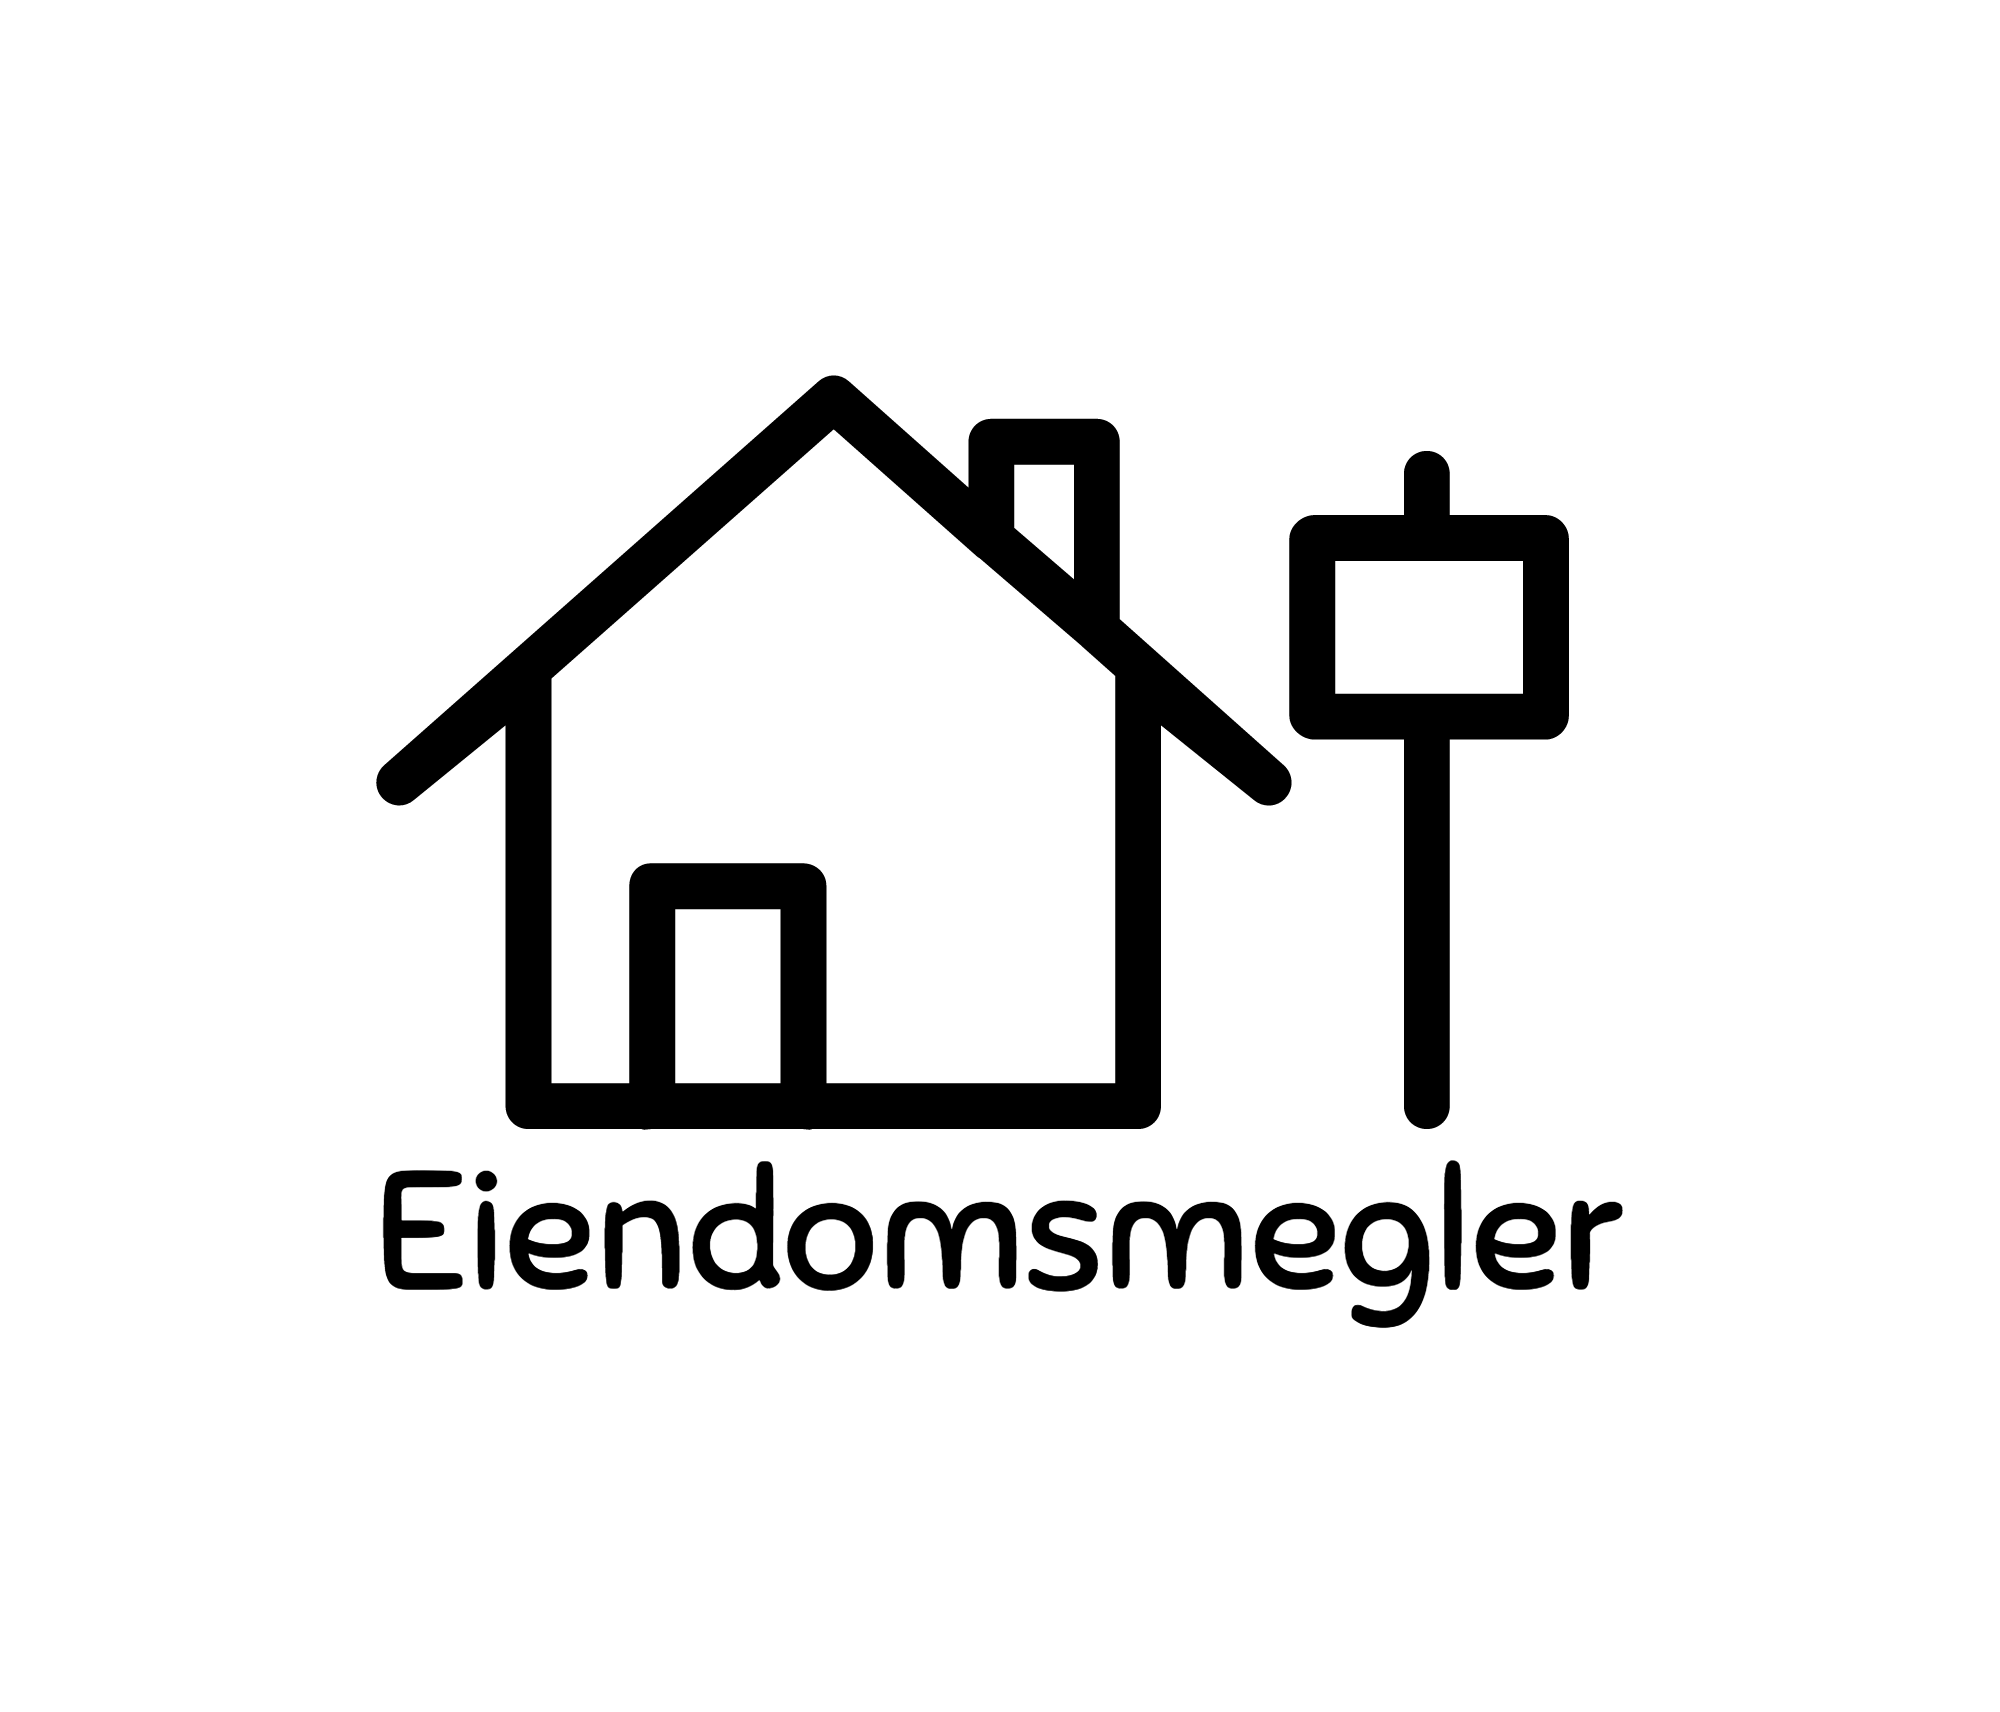 Eiendomsmegler-logo-black.png